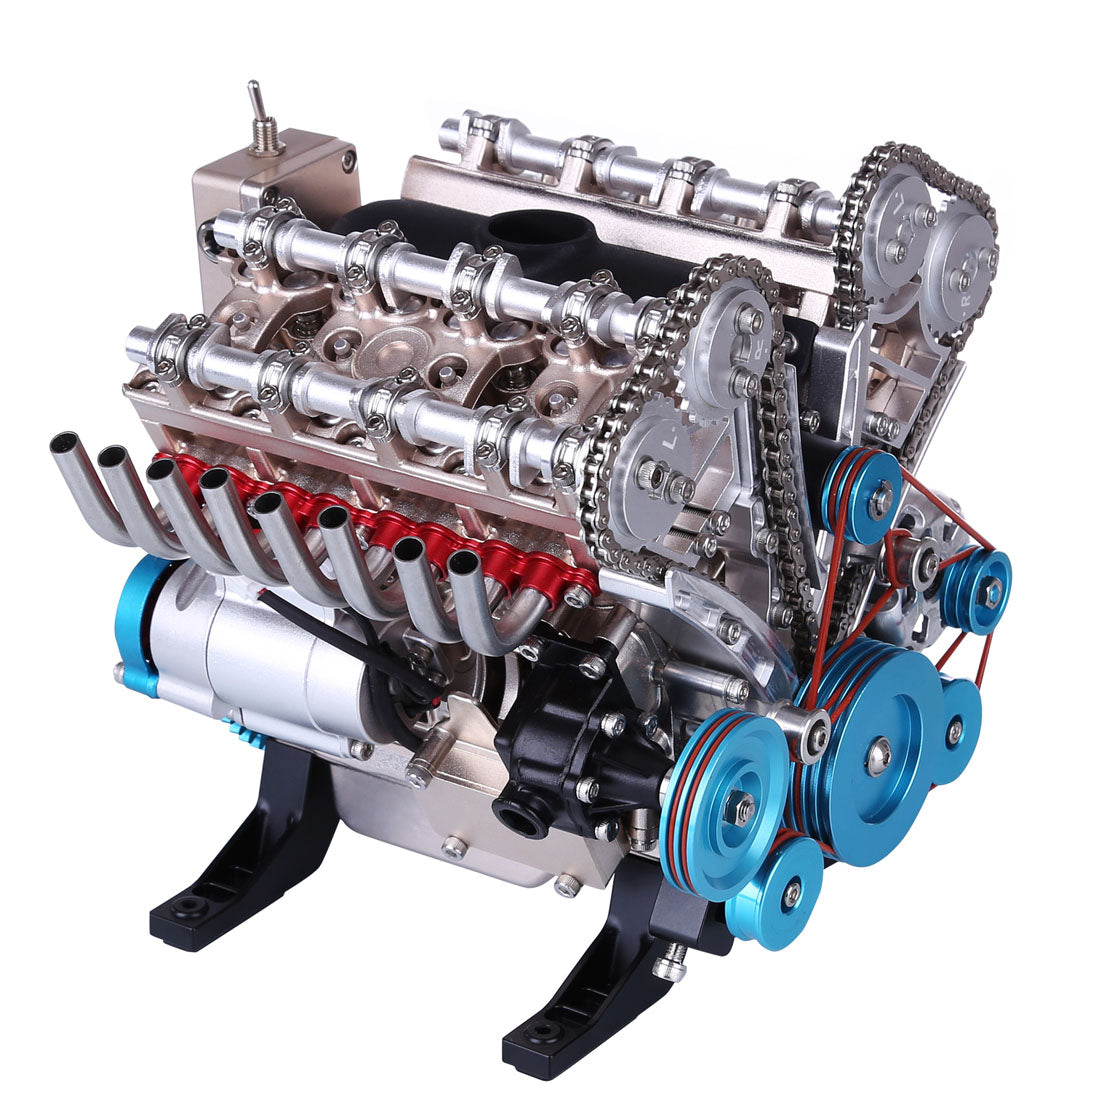 Motor lab - moteur a combustion v8, jeux de constructions & maquettes